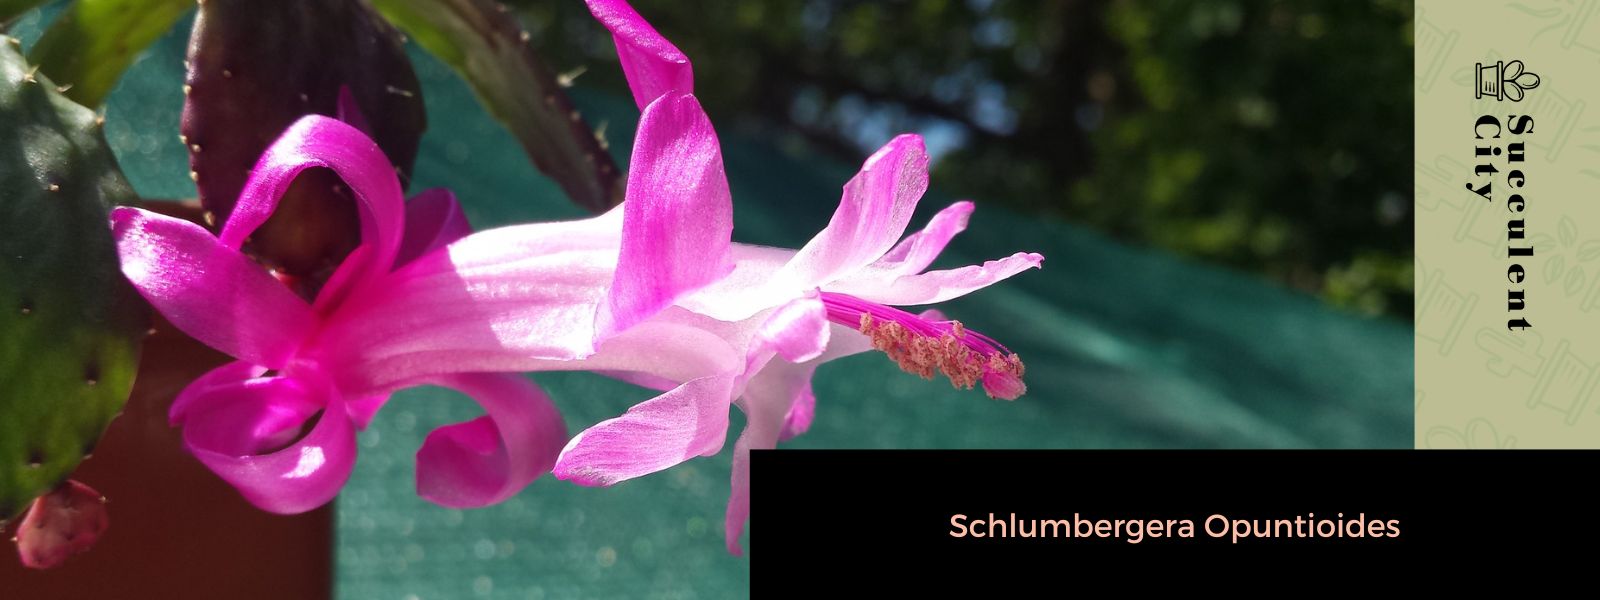 Schlumbergera Opuntioides